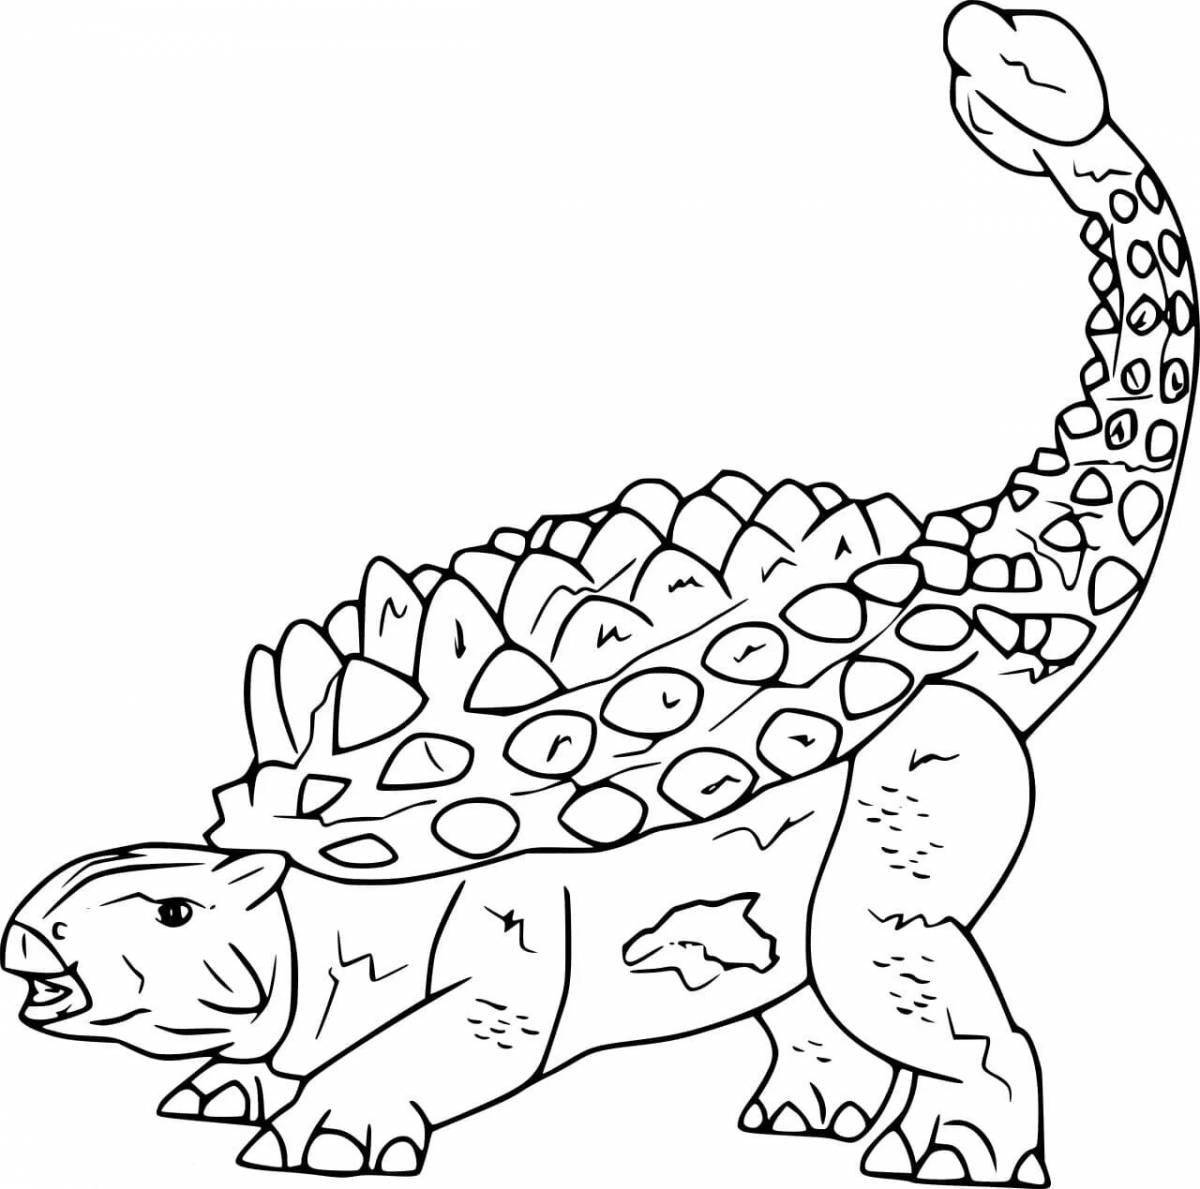 Юмористическая раскраска анкилозавр для детей